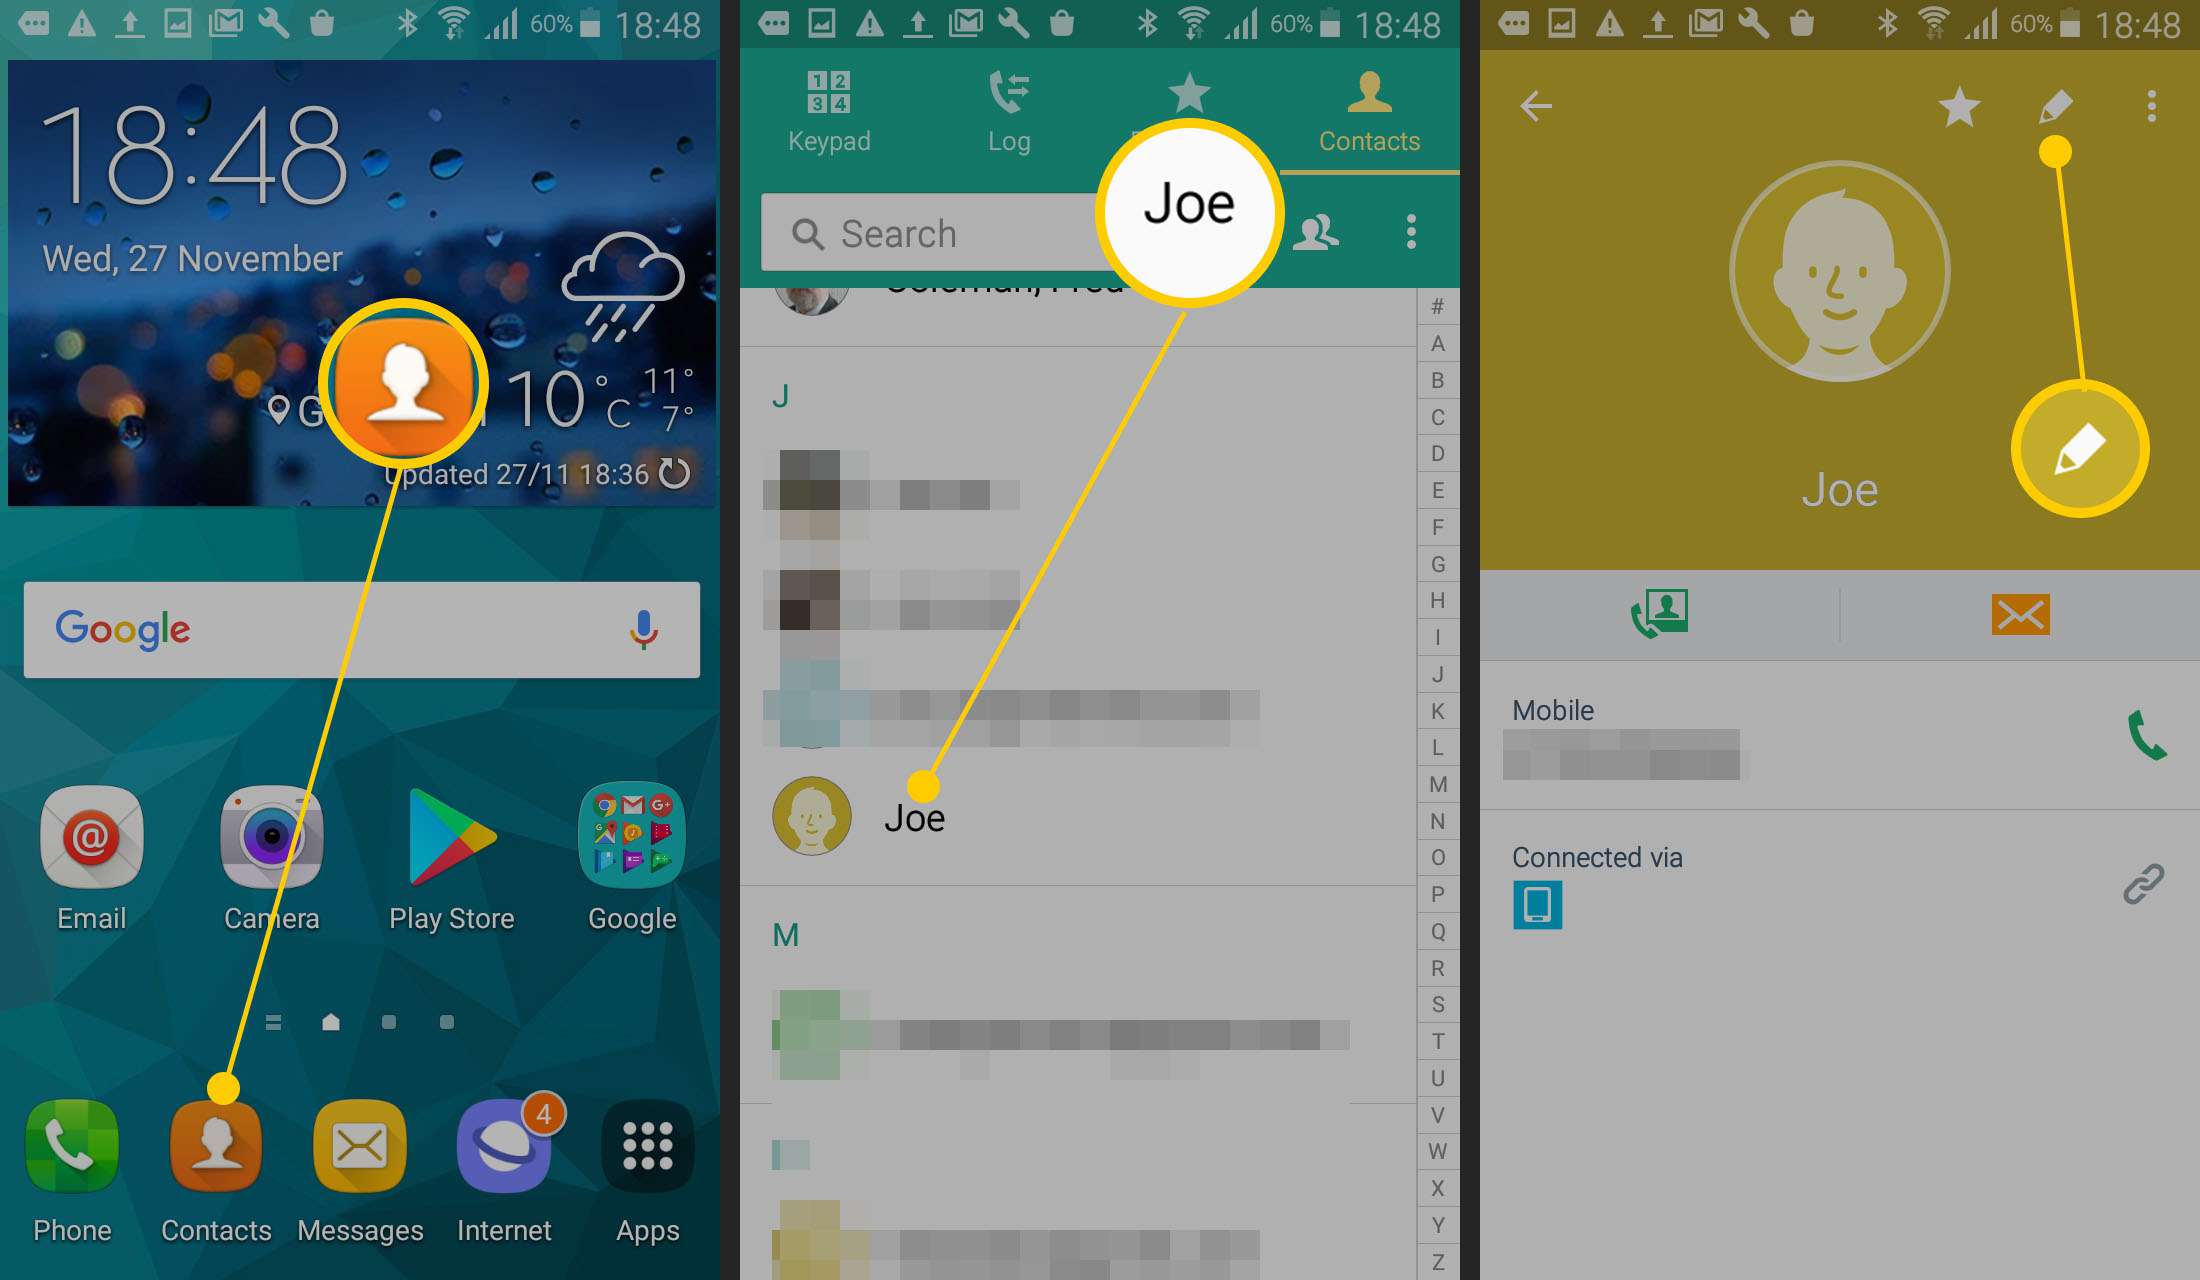 Schermafbeeldingen die laten zien hoe u een contact op Android kunt vinden en bewerken